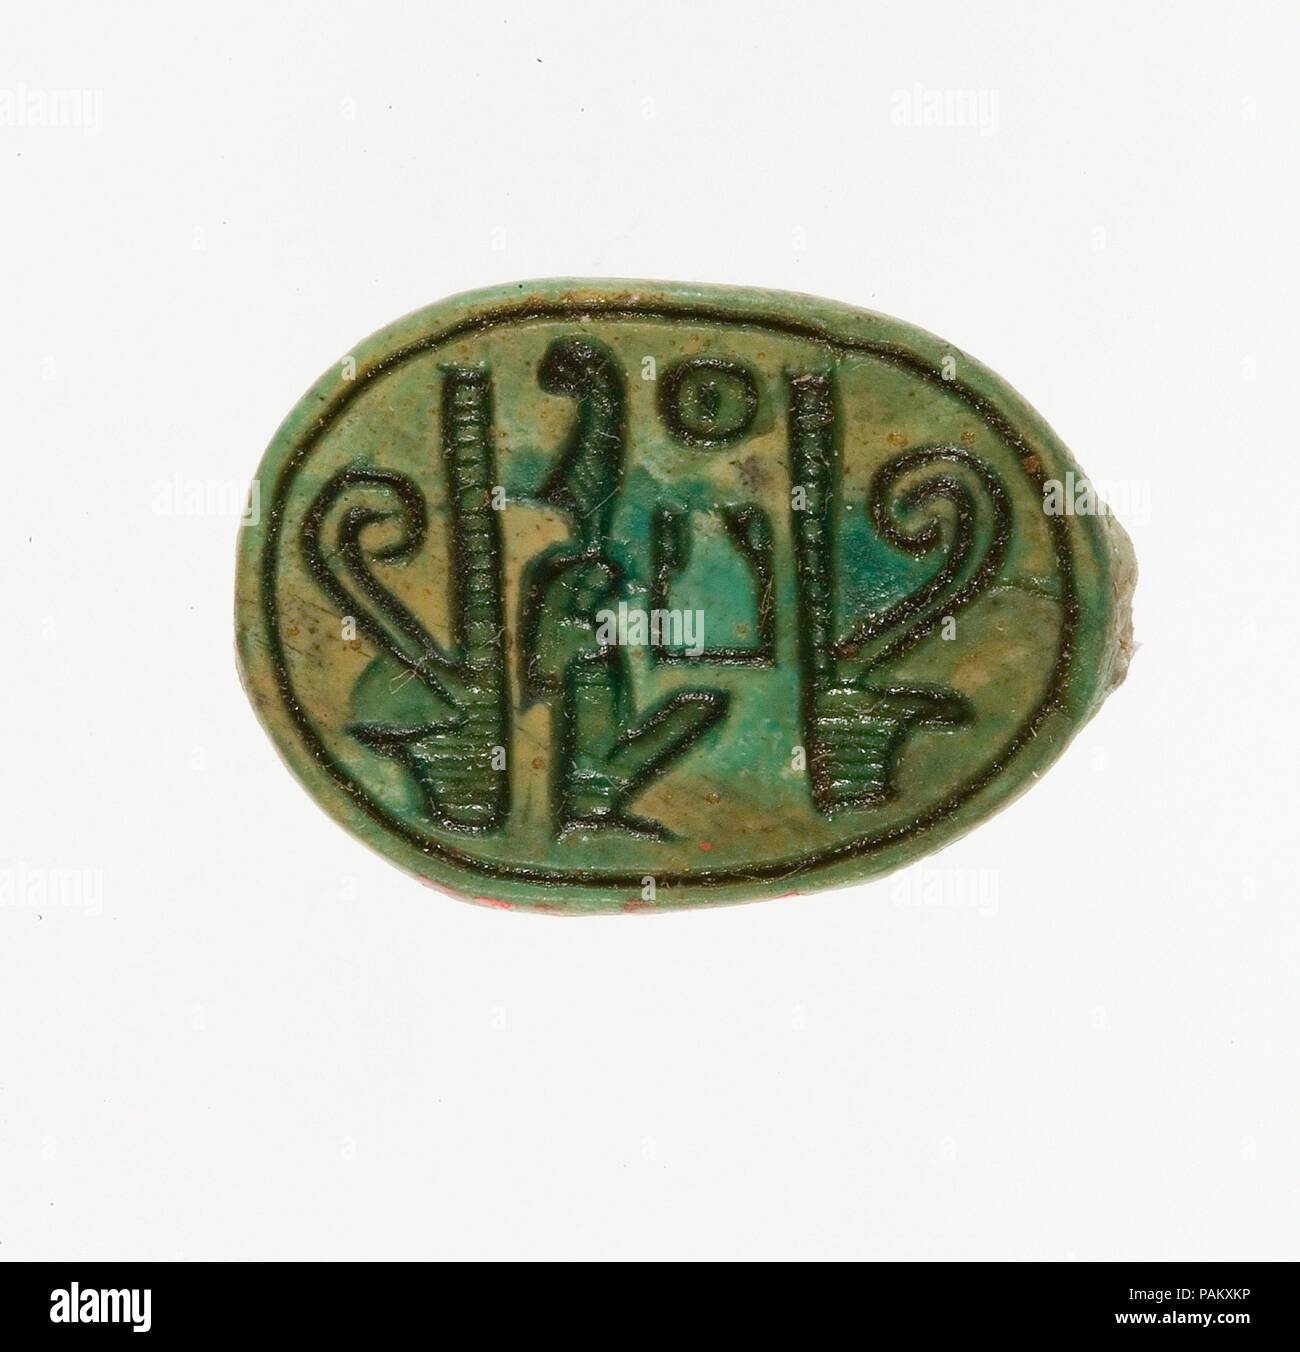 Inscrita con el nombre de escarabajo Maatkare (Hatshepsut) flanqueado por dos coronas de color rojo. Dimensiones: L. de 1.9 cm (3/4 pulg.); W. 1,4 cm (9/16 pulg.). Dinastía: Dinastía 18, temprano. Reinado: Articulación reinado de Hatshepsut y Thutmosis III. Fecha: ca. 1479-1458 A.C. Durante la temporada 1926-1927 excavaciones, el Museo Egipcio de la expedición descubrieron tres depósitos de la Fundación a lo largo de la pared del gabinete oriental del templo funerario de Hatshepsut en Deir el-Bahri, en el oeste de Tebas. Entre los contenidos fueron 299 escarabajos y juntas de sello. Sesenta y cinco de ellas se encuentran actualmente en el Museo Egipcio, El Cairo, y el resto fueron adquiridos por el Mu Foto de stock